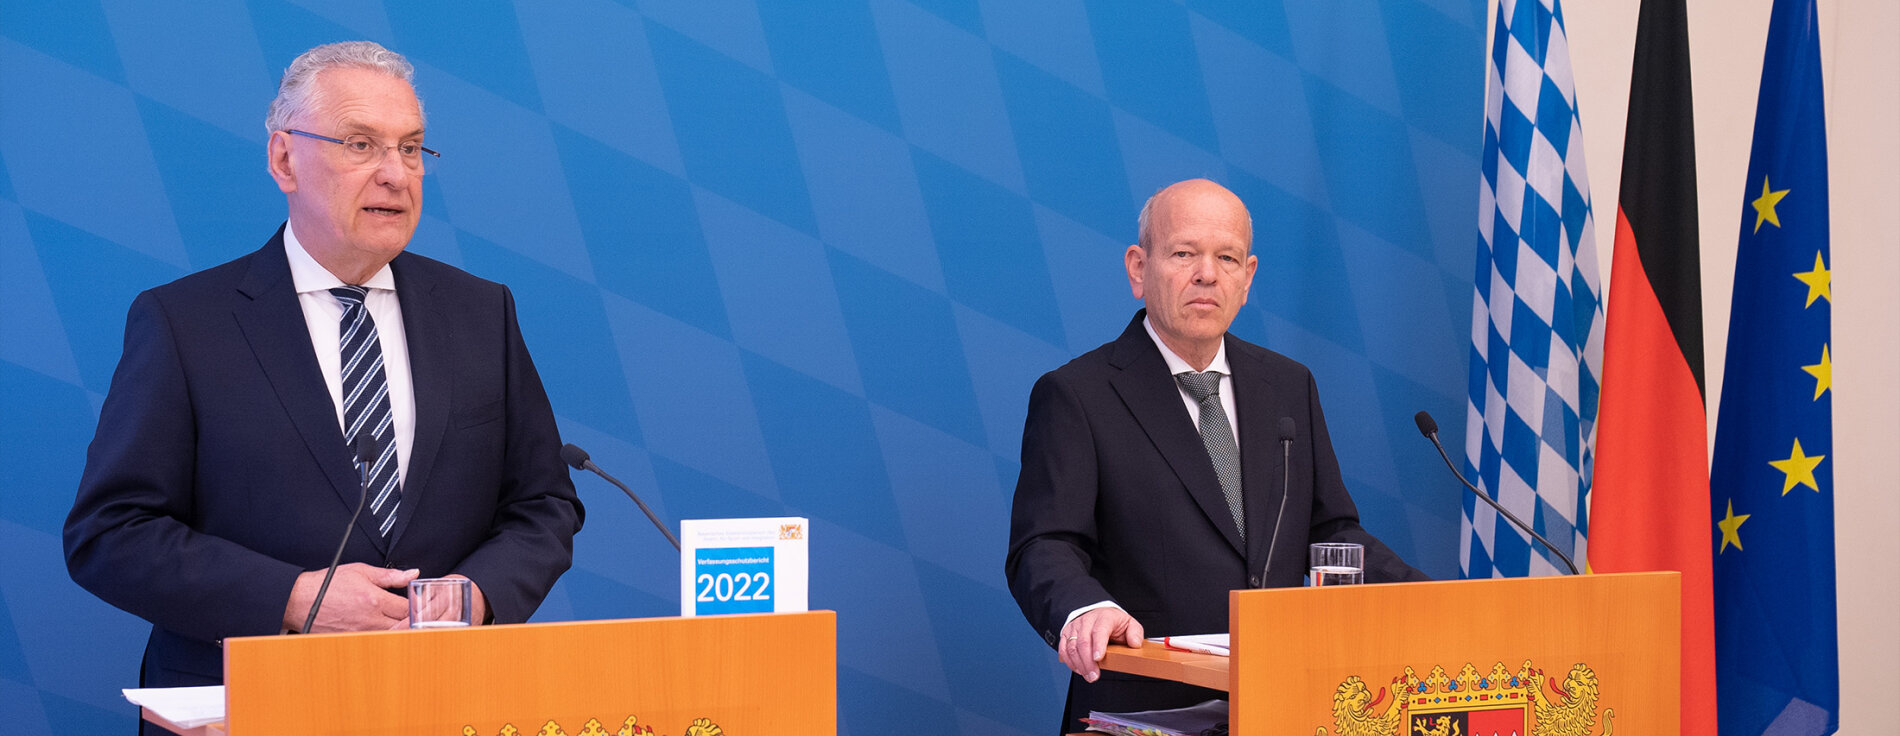 Innenminister Joachim Herrmann und Dr. Burkhard Körner, Präsident des Bayerischen Landesamts für Verfassungsschutz an Rednerpulten